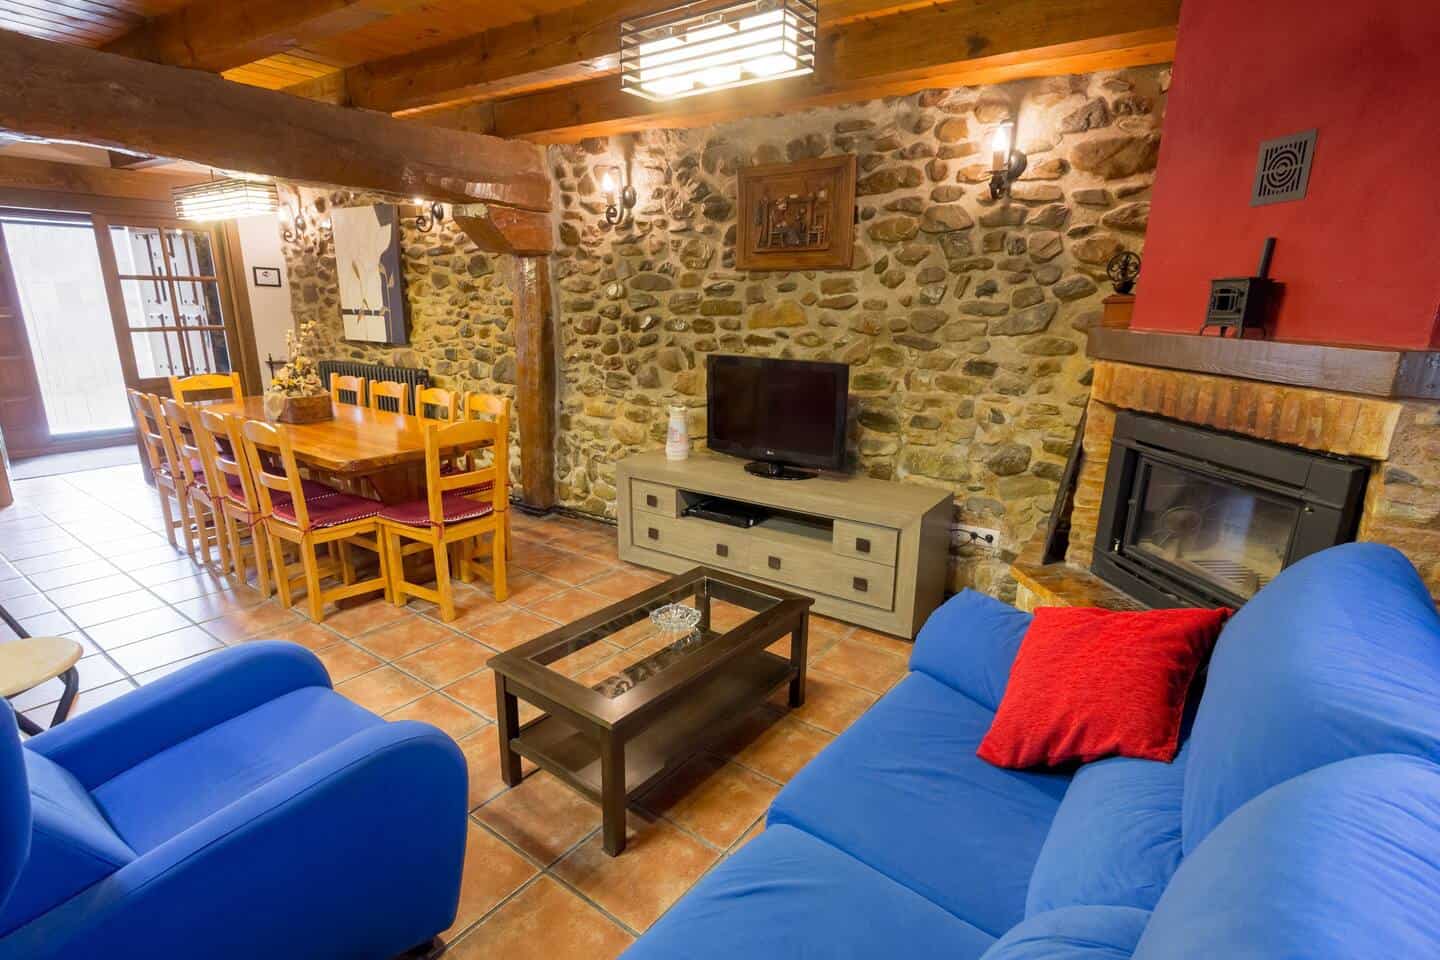 Image of Airbnb rental in Burgos, Spain